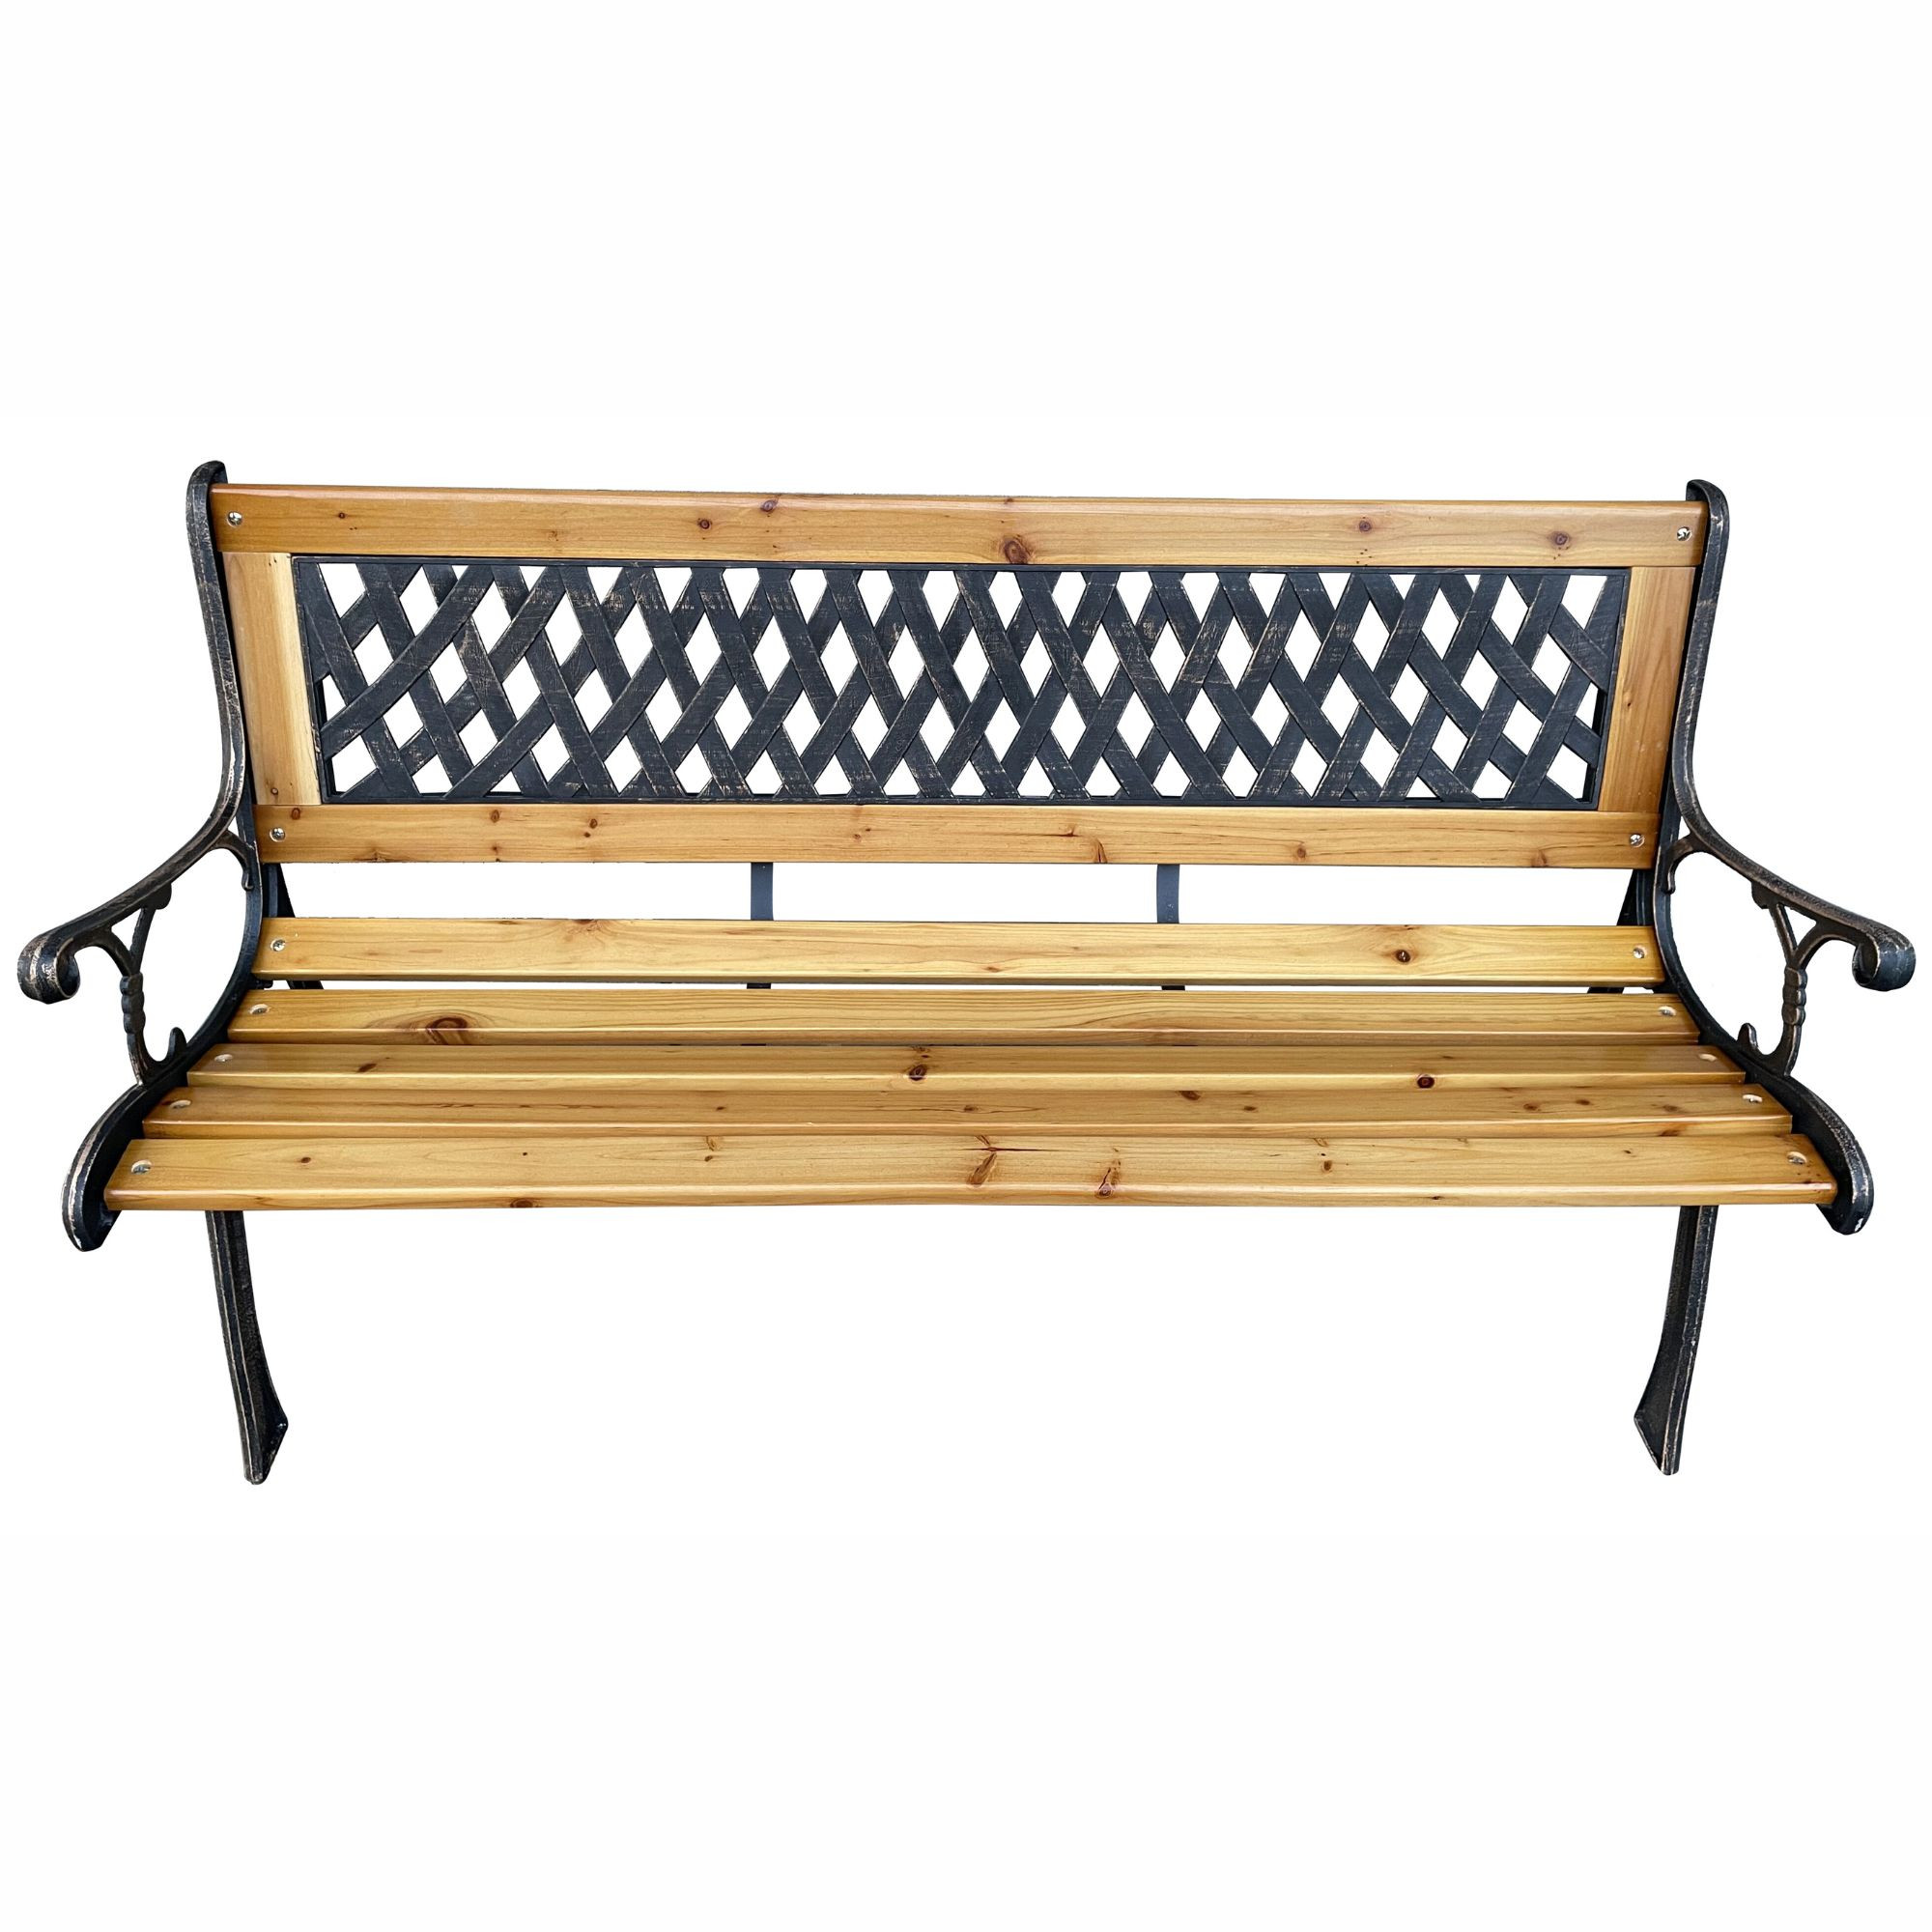 Czarna ławka ogrodowa MIRT z lakierowanym drewnem i żeliwnymi nogami szerokość 127 cm - AKORD Fabryka Mebli